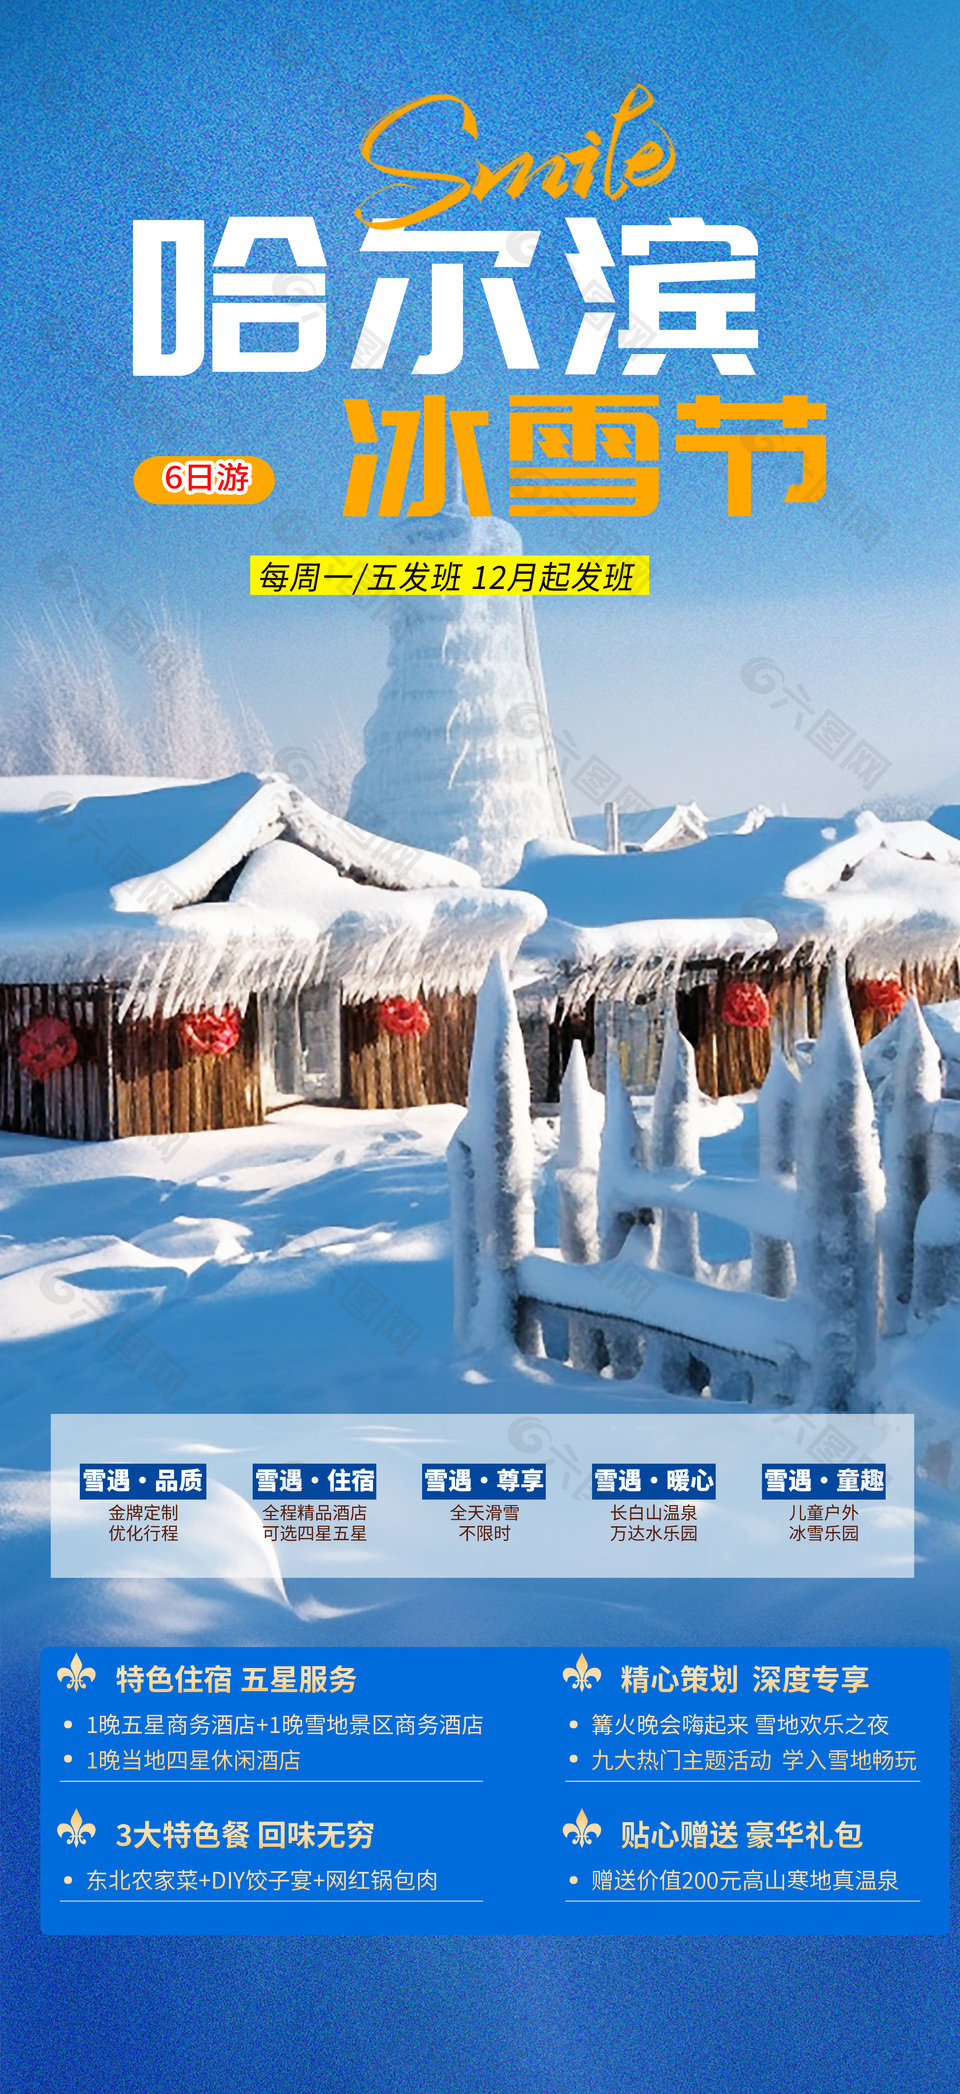 哈尔滨冰雪节旅游海报设计